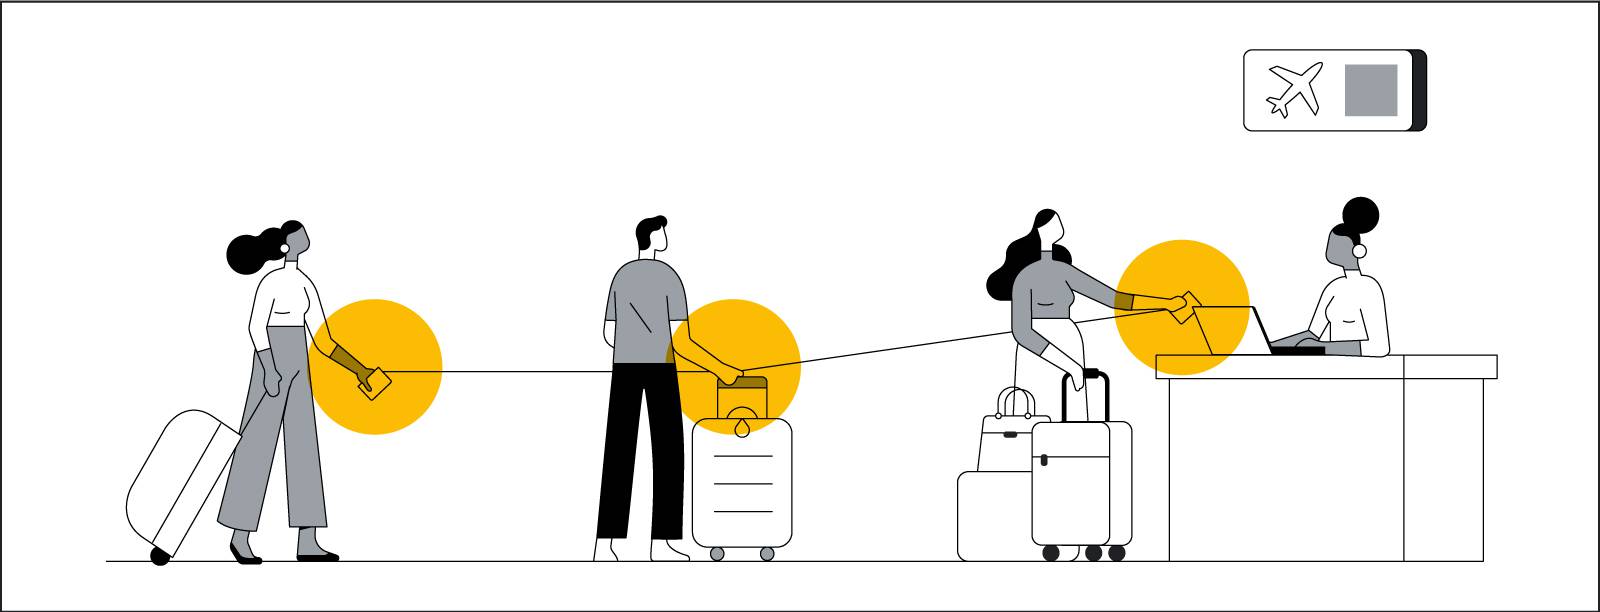 Çizimde, bavullarıyla birlikte havaalanındaki check-in gişesinin önünde sırada bekleyen insanlar gösteriliyor. Sıradaki insanların arasında yeterince mesafe var, ellerinin arasında ince siyah bir çizgi bulunuyor ve bu çizgi gişedeki kadına kadar uzanıyor